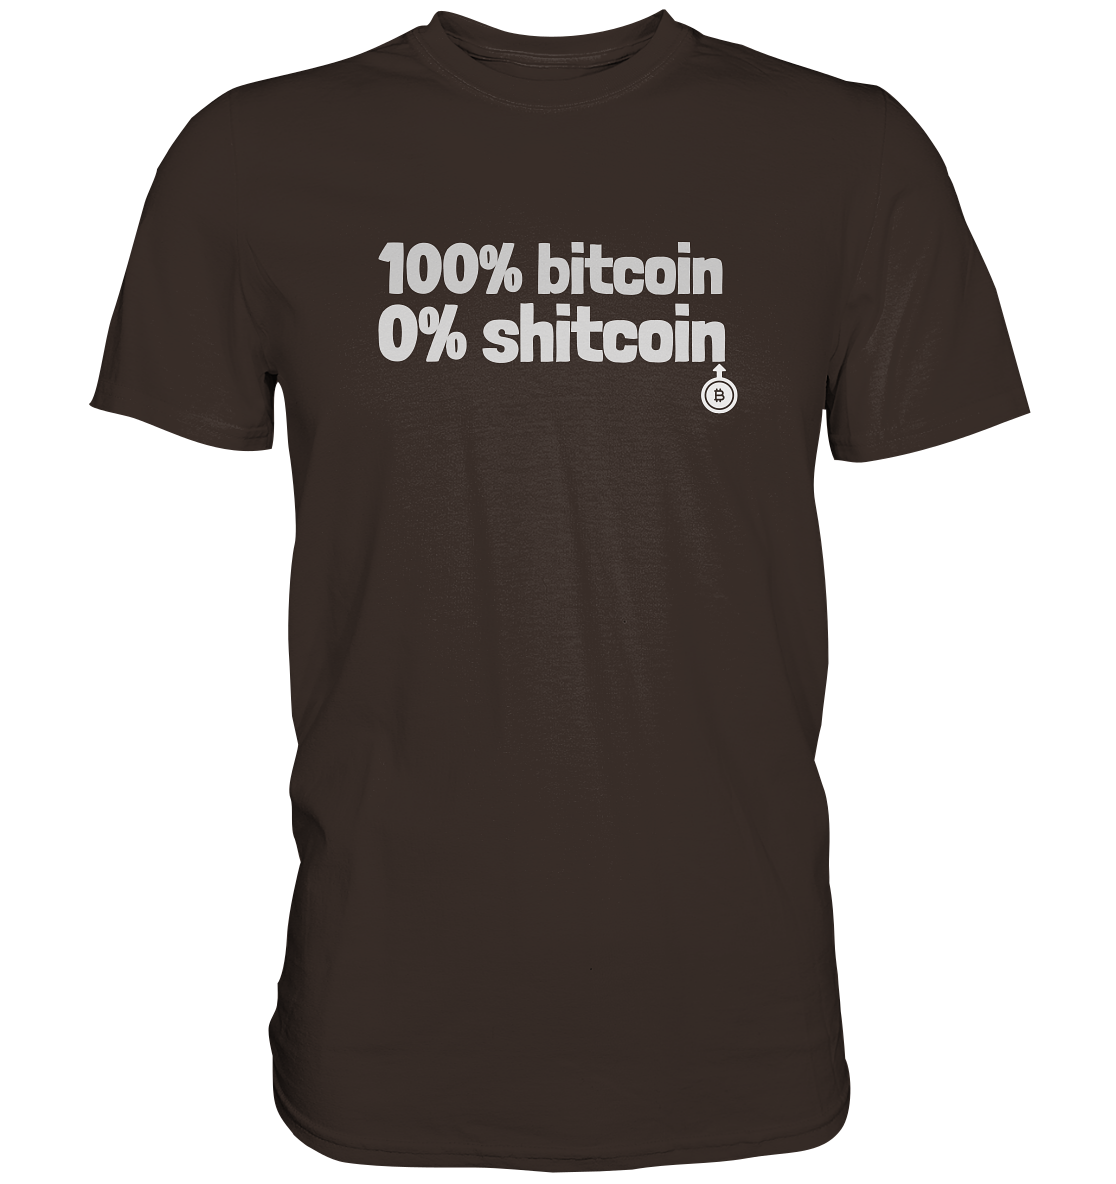 100% bitcoin - 0% shitcoin  - Premium Shirt